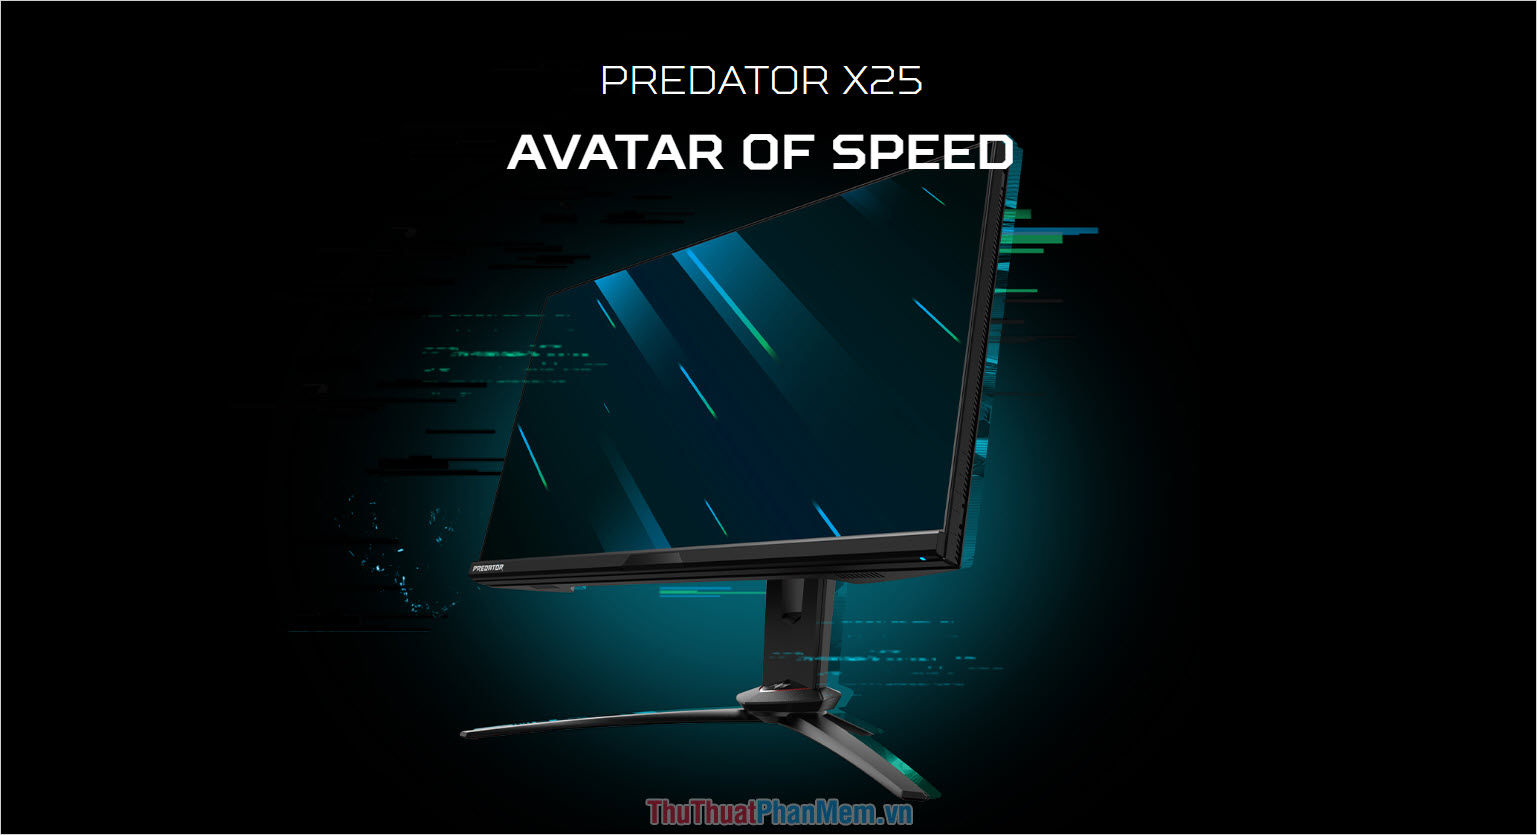 Acer PREDATOR X25